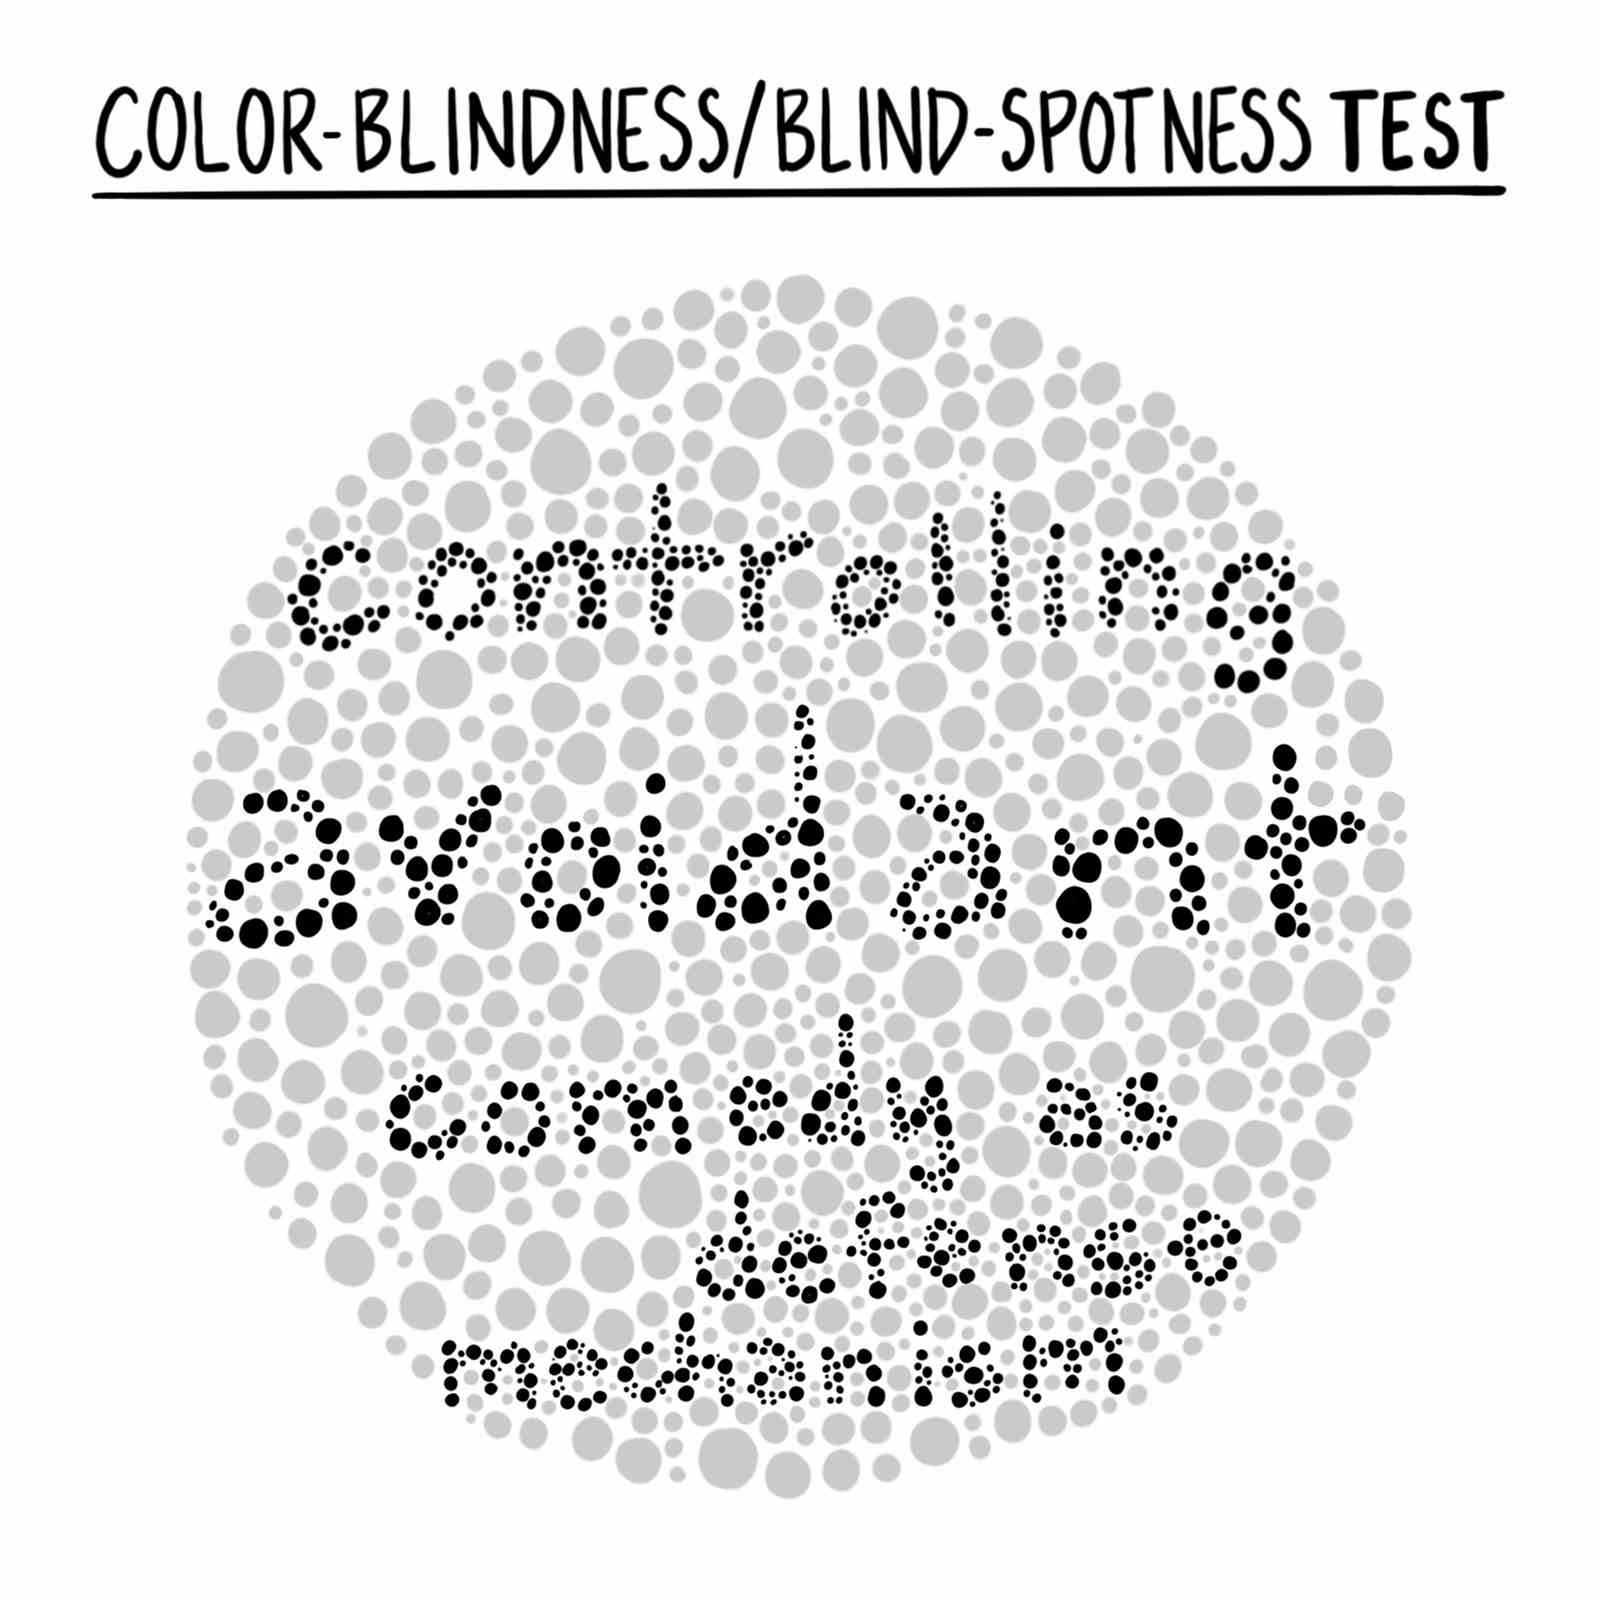 Farbenblindheitstest über Vermeidungskomik als Abwehrmechanismus